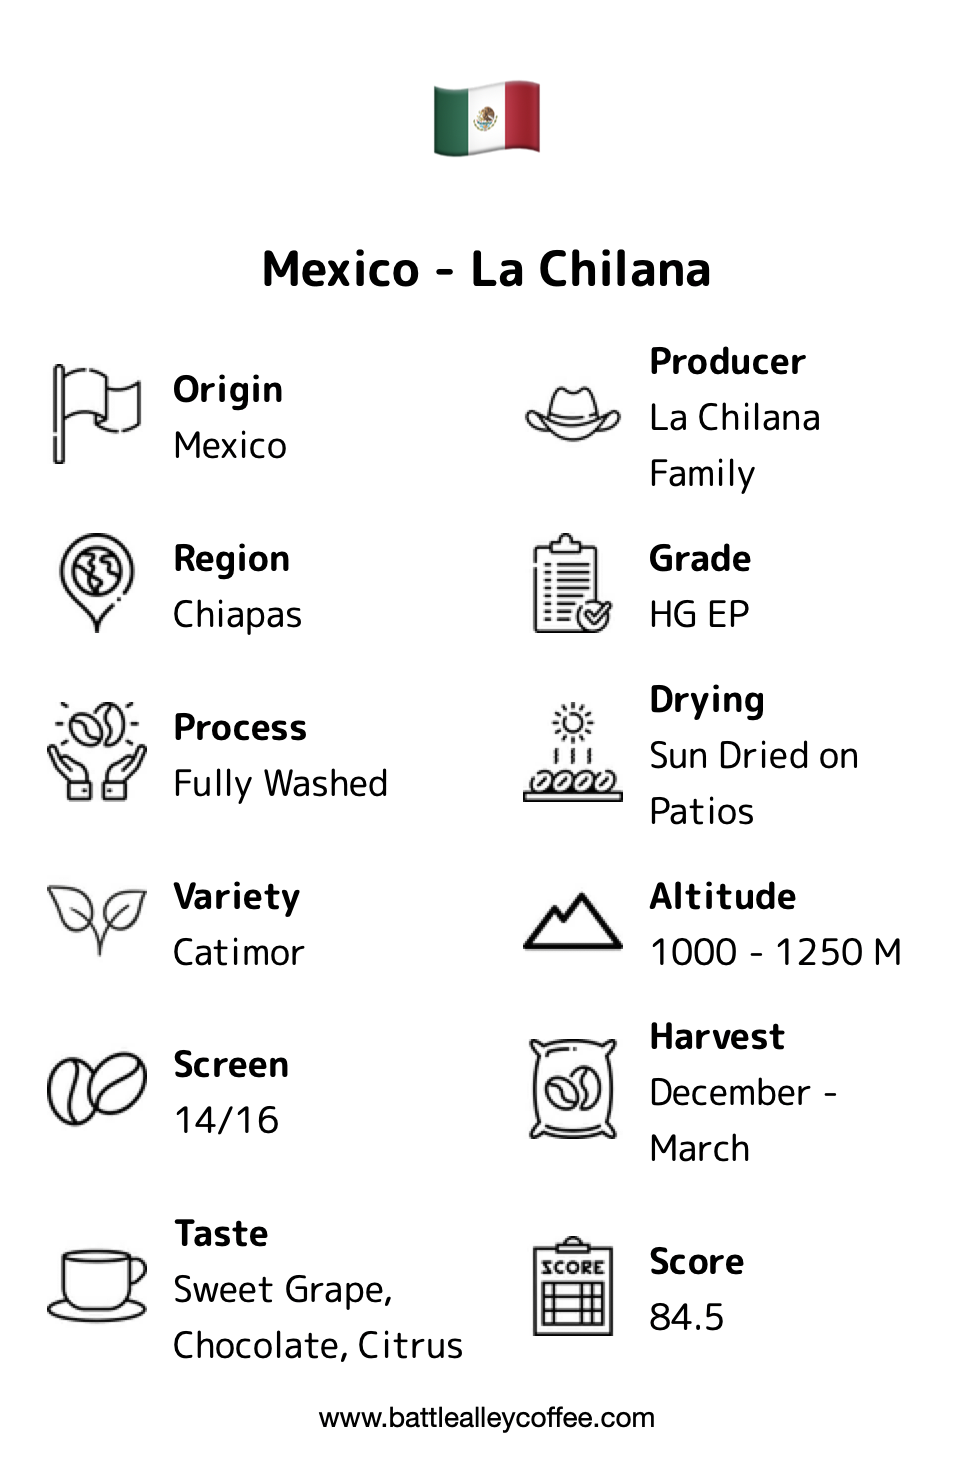 Mexican La Chiliana description